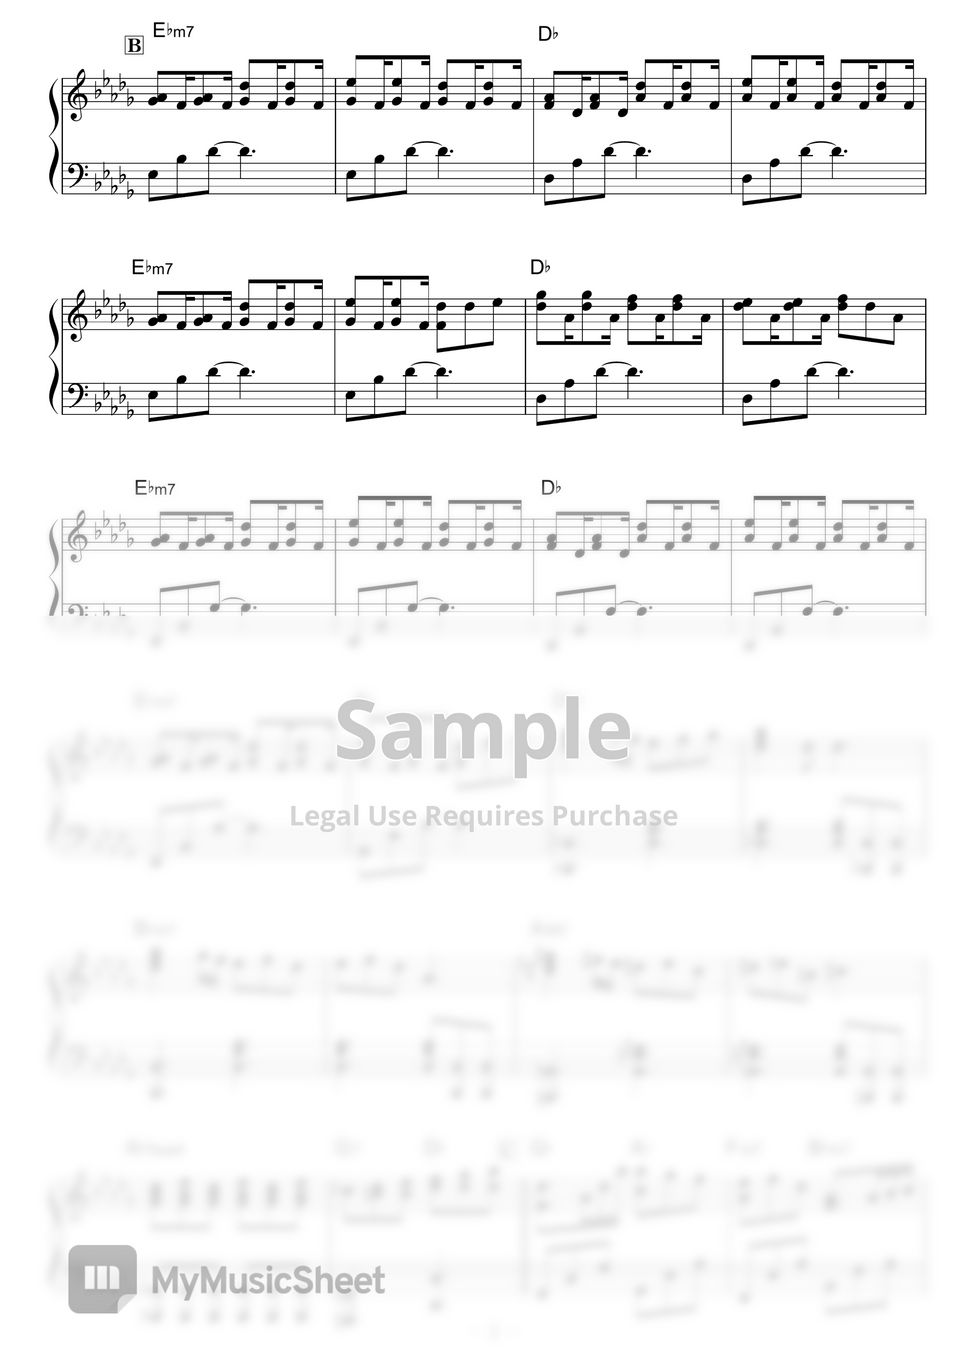 Schroeder-Headz - Horizon by piano*score